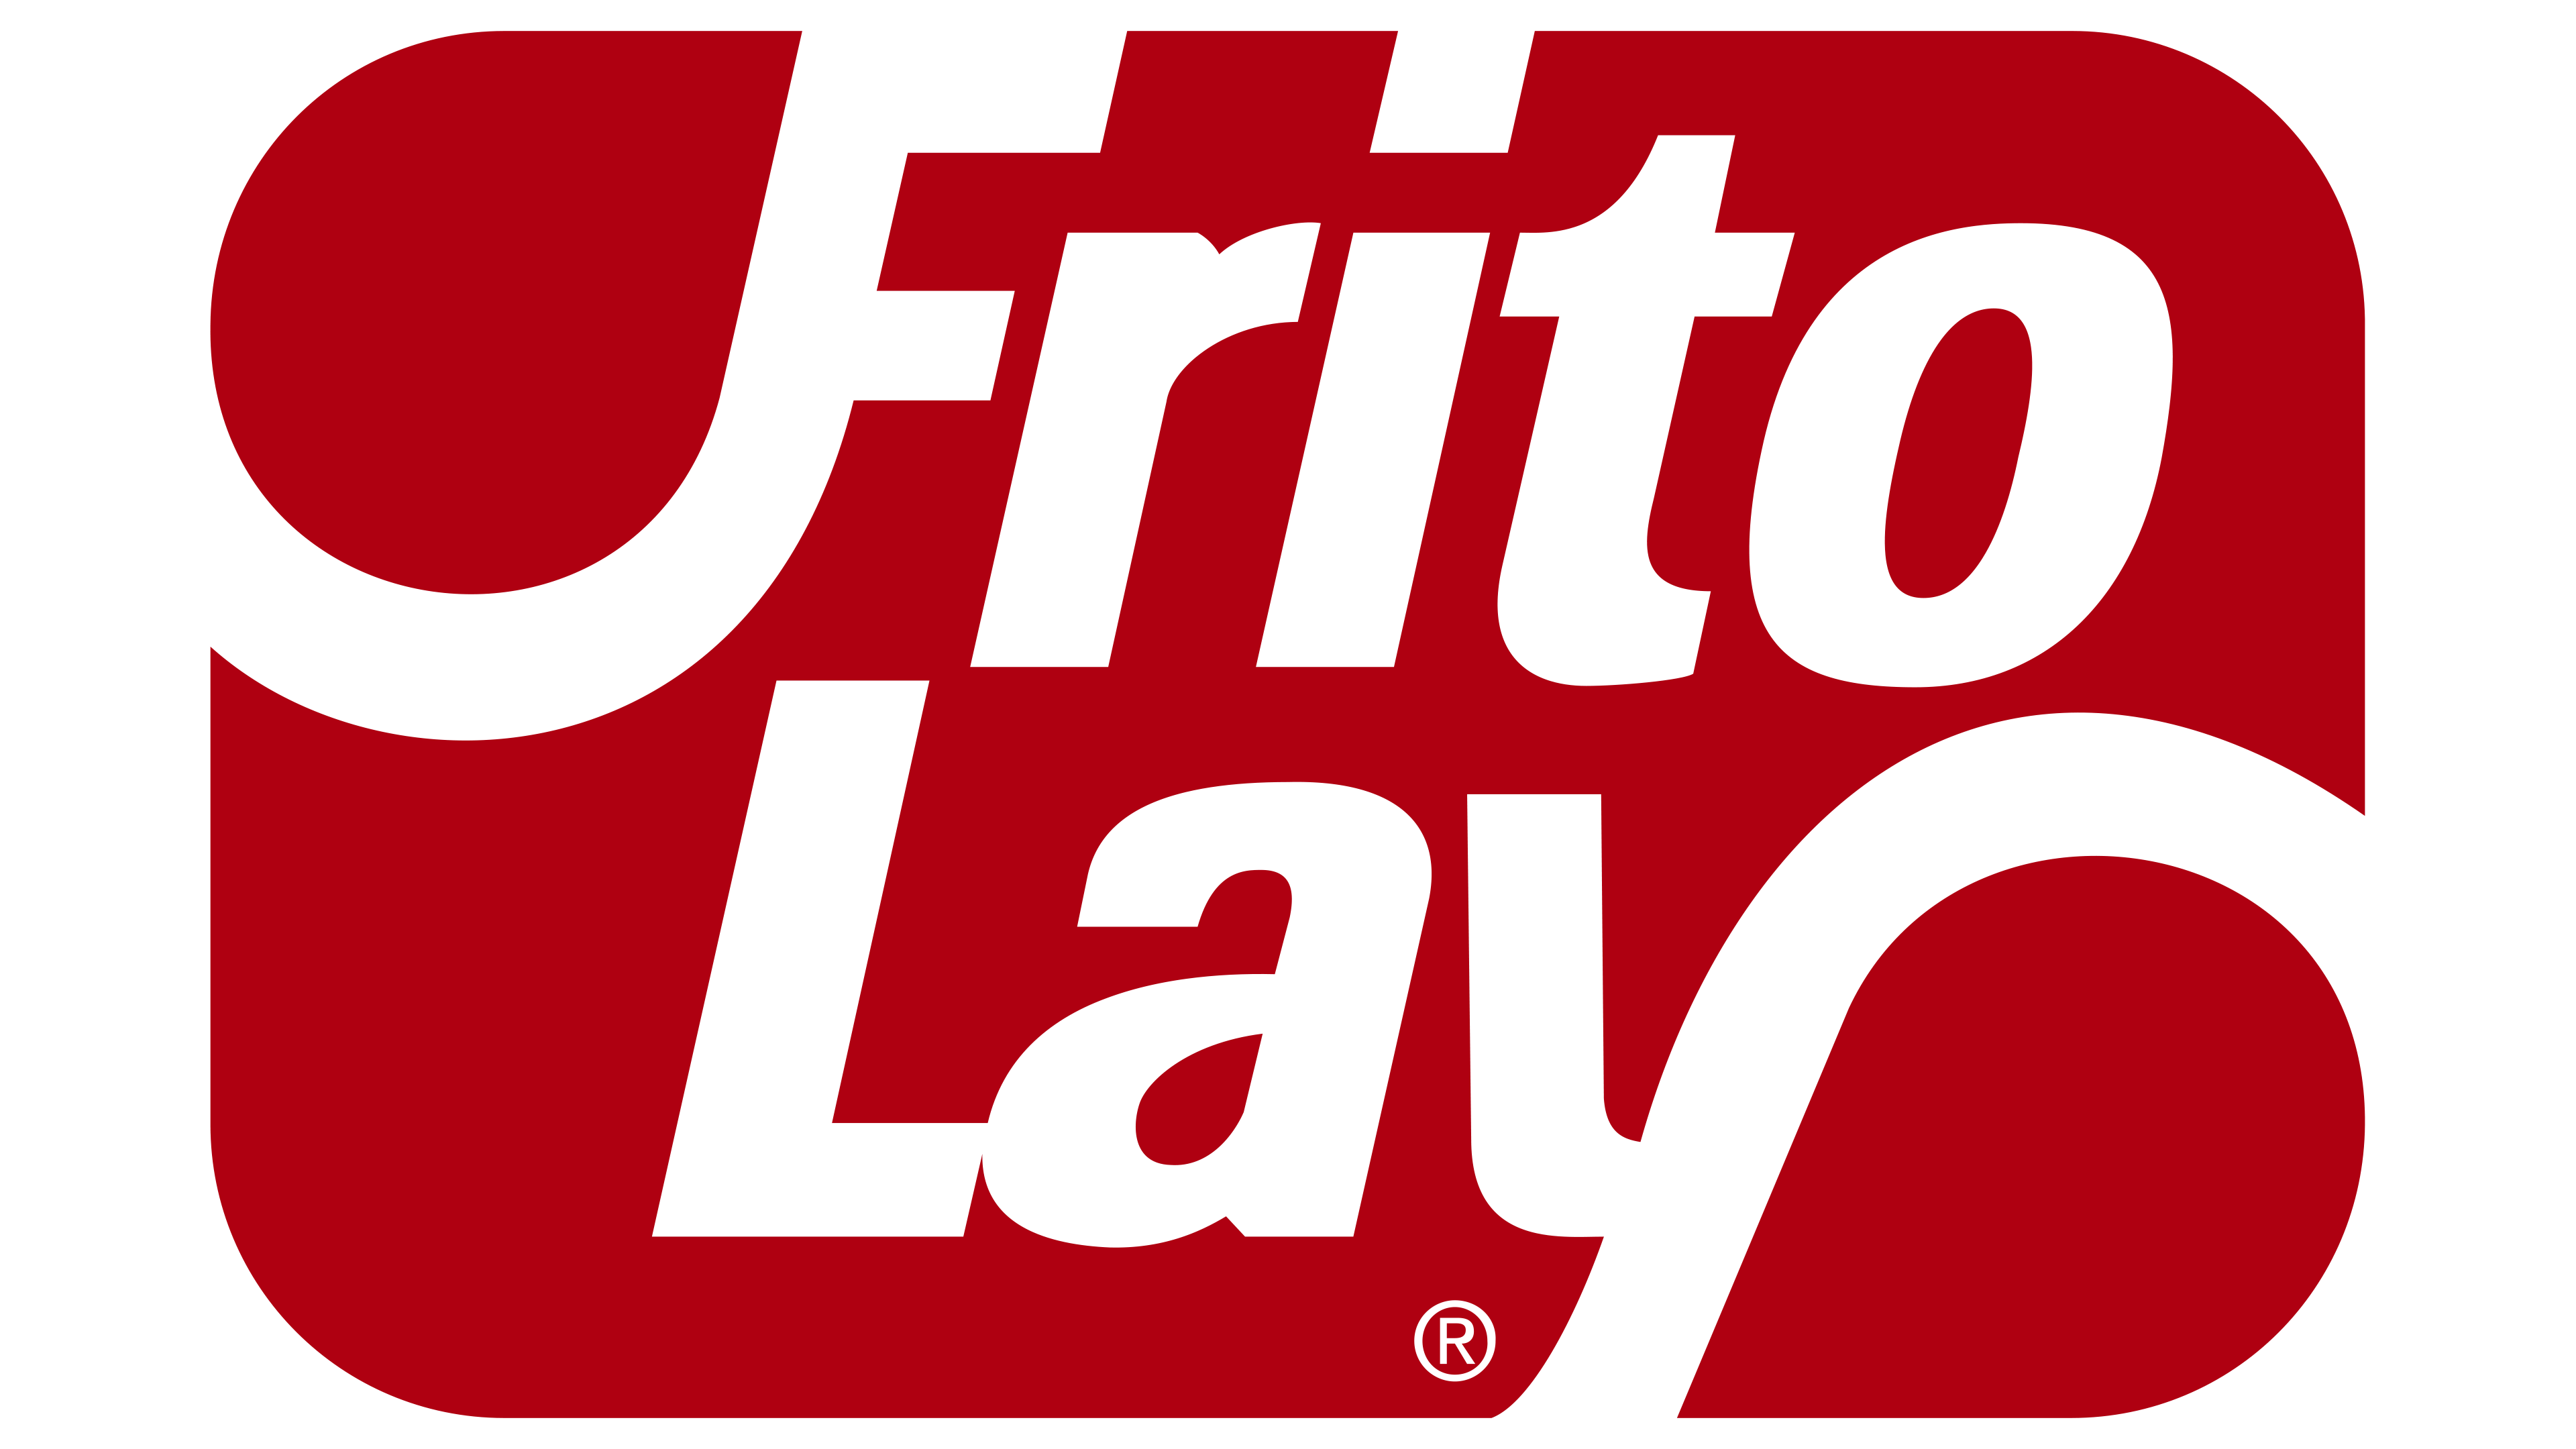 Frito Lay Logo History